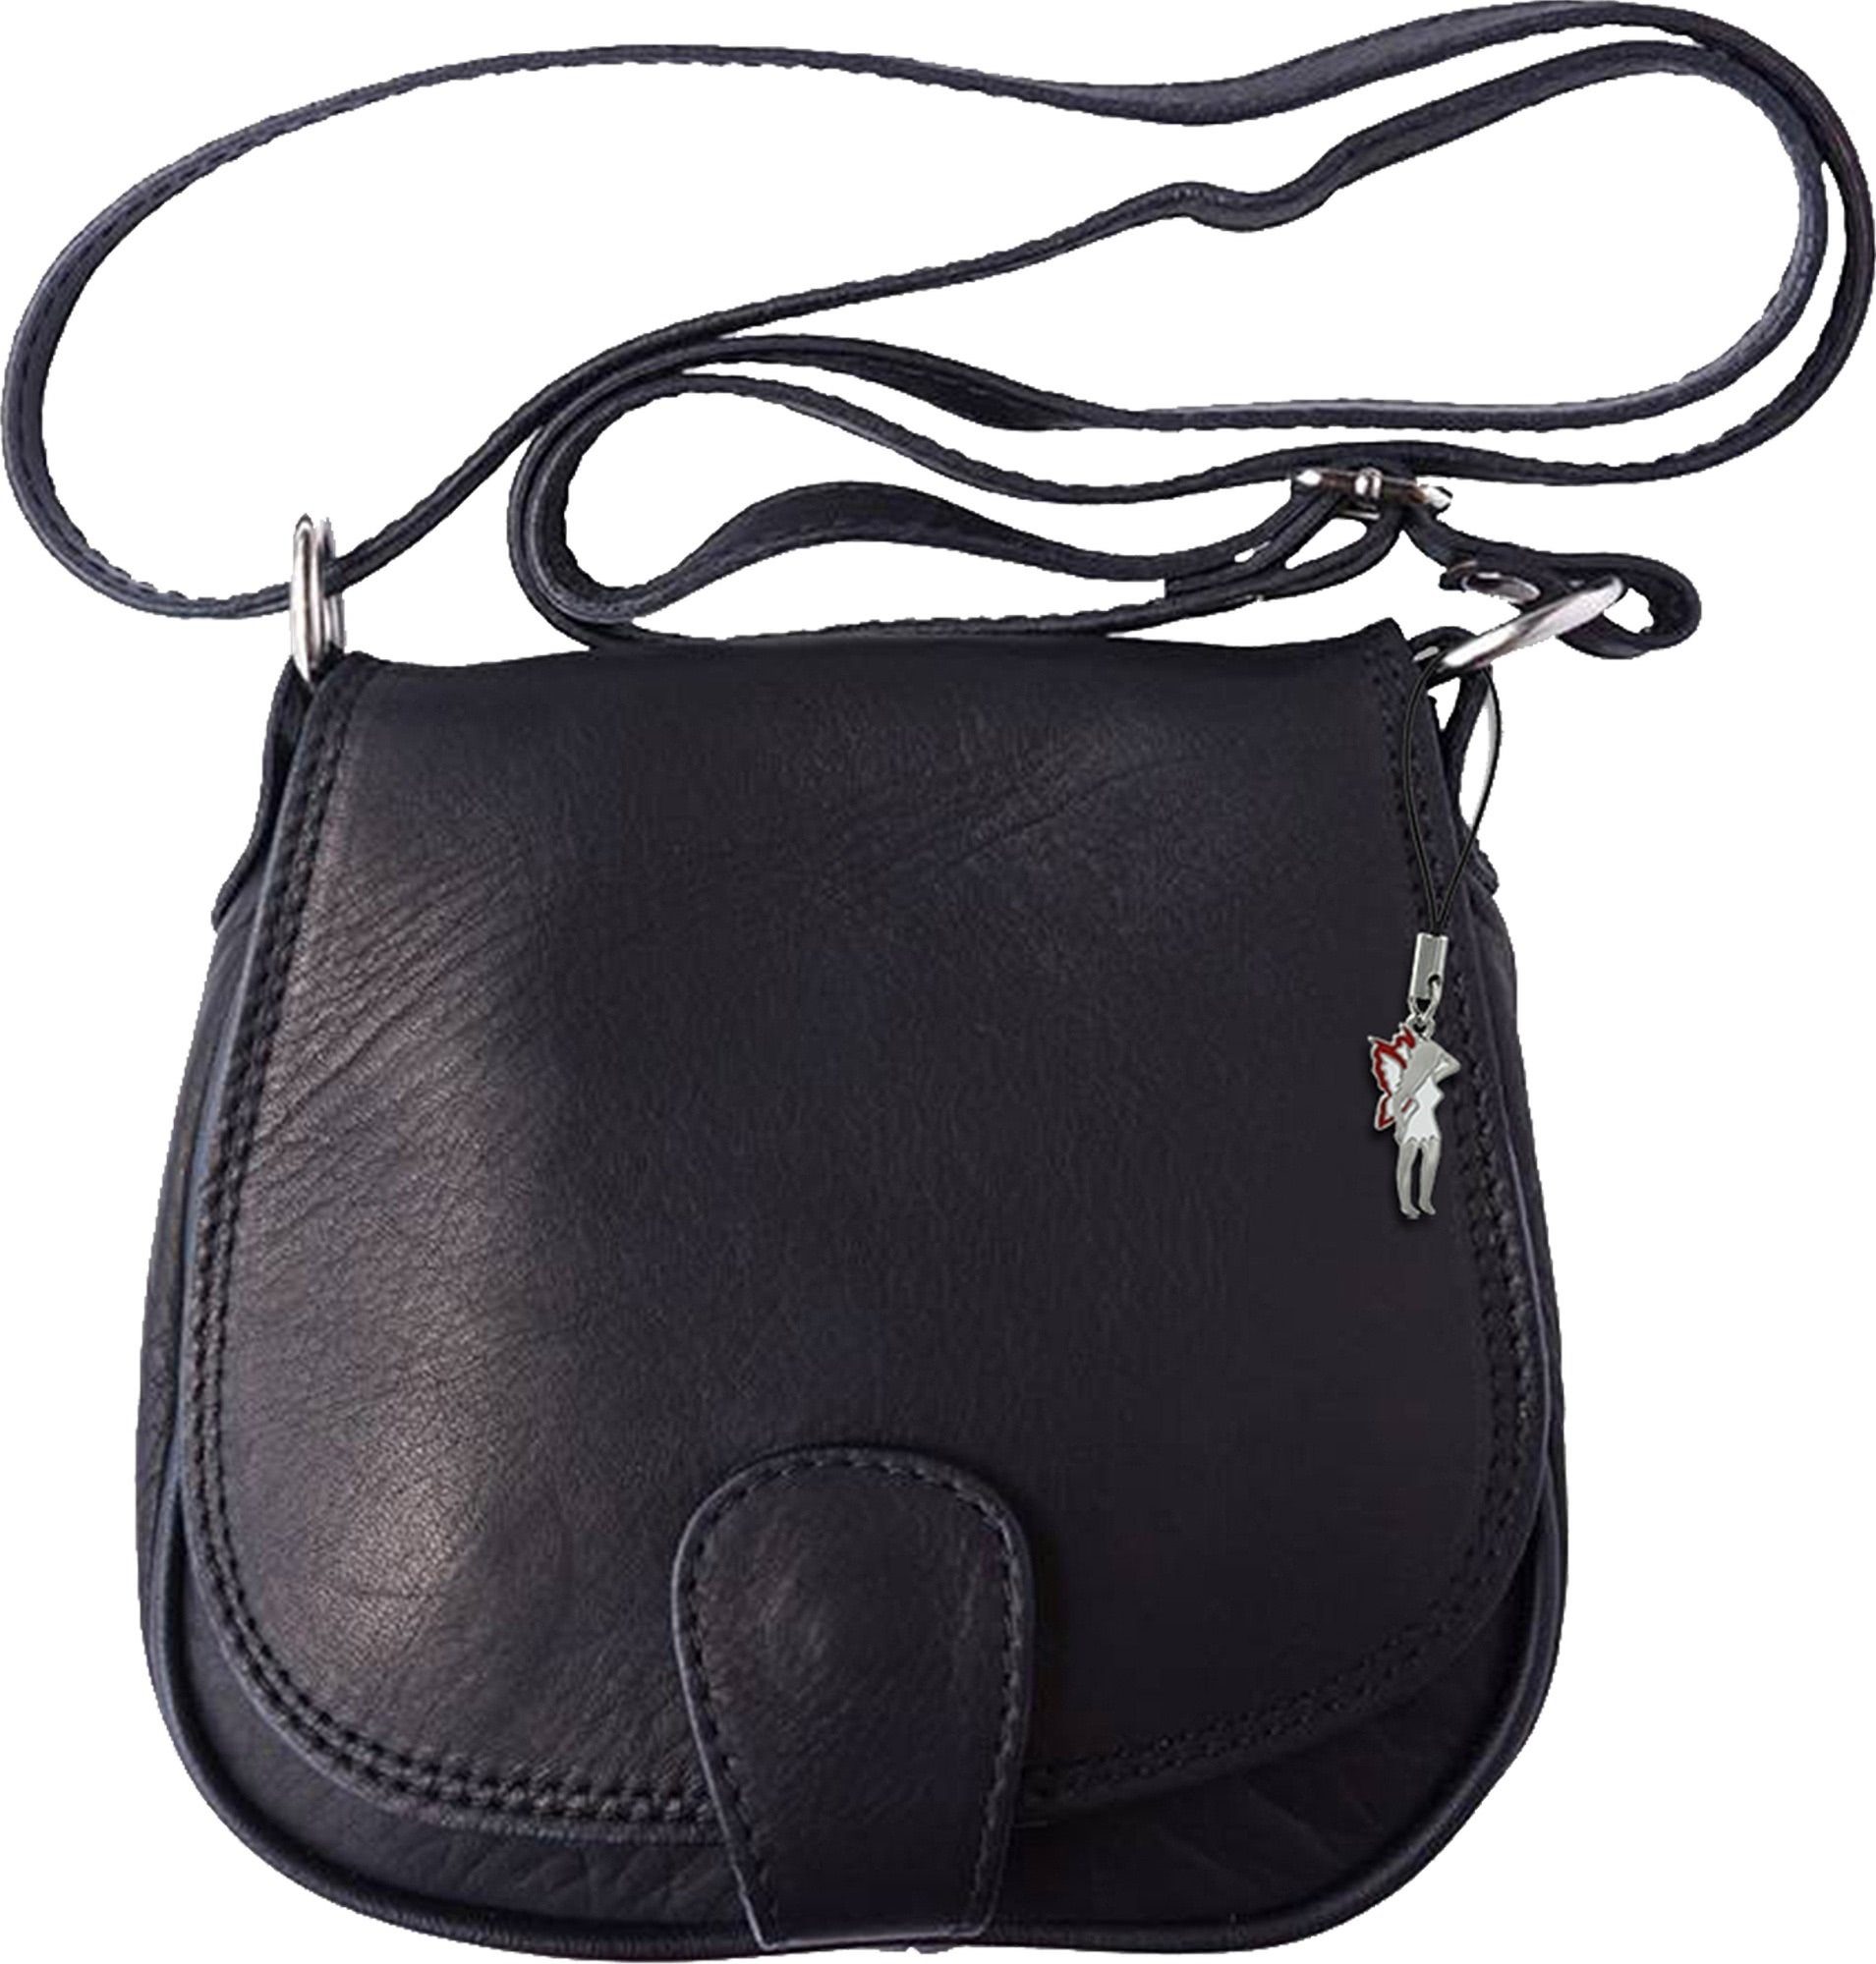 FLORENCE Abendtasche »OTF103X Florence Damen Umhängetasche« (Umhängetasche),  Damen Tasche aus Echtleder in schwarz, ca. 17cm Breite, Made-In Italy  online kaufen | OTTO